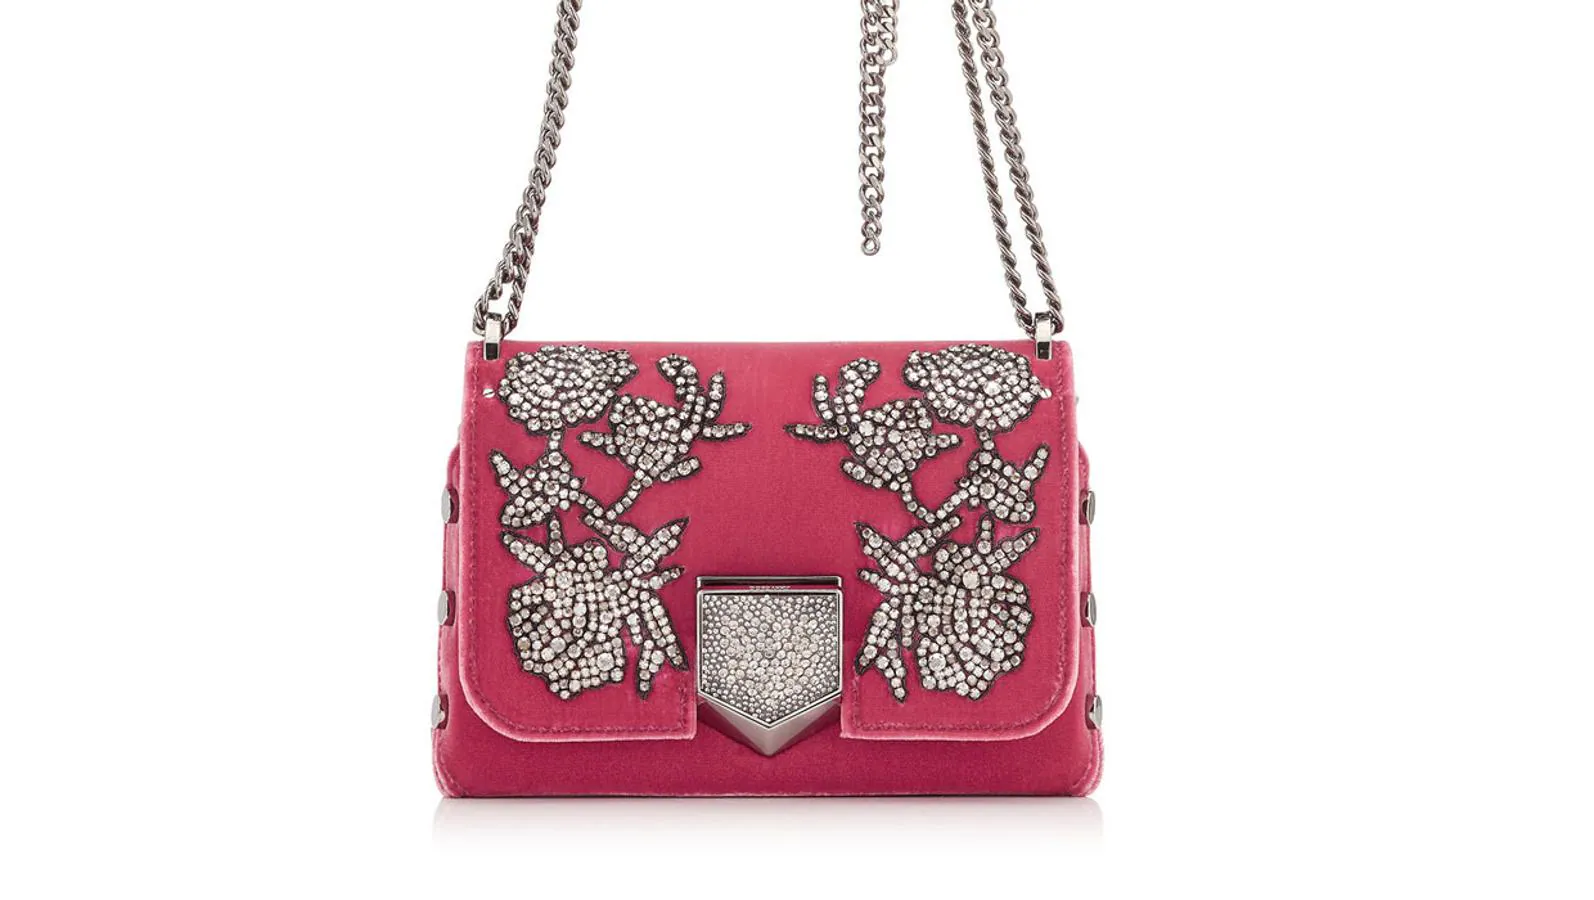 Bolso de terciopelo rosa con detalles de cristal, modelo Lockett Petite de Jimmy Choo (precio: 898 euros / antes: 1.795 euros)